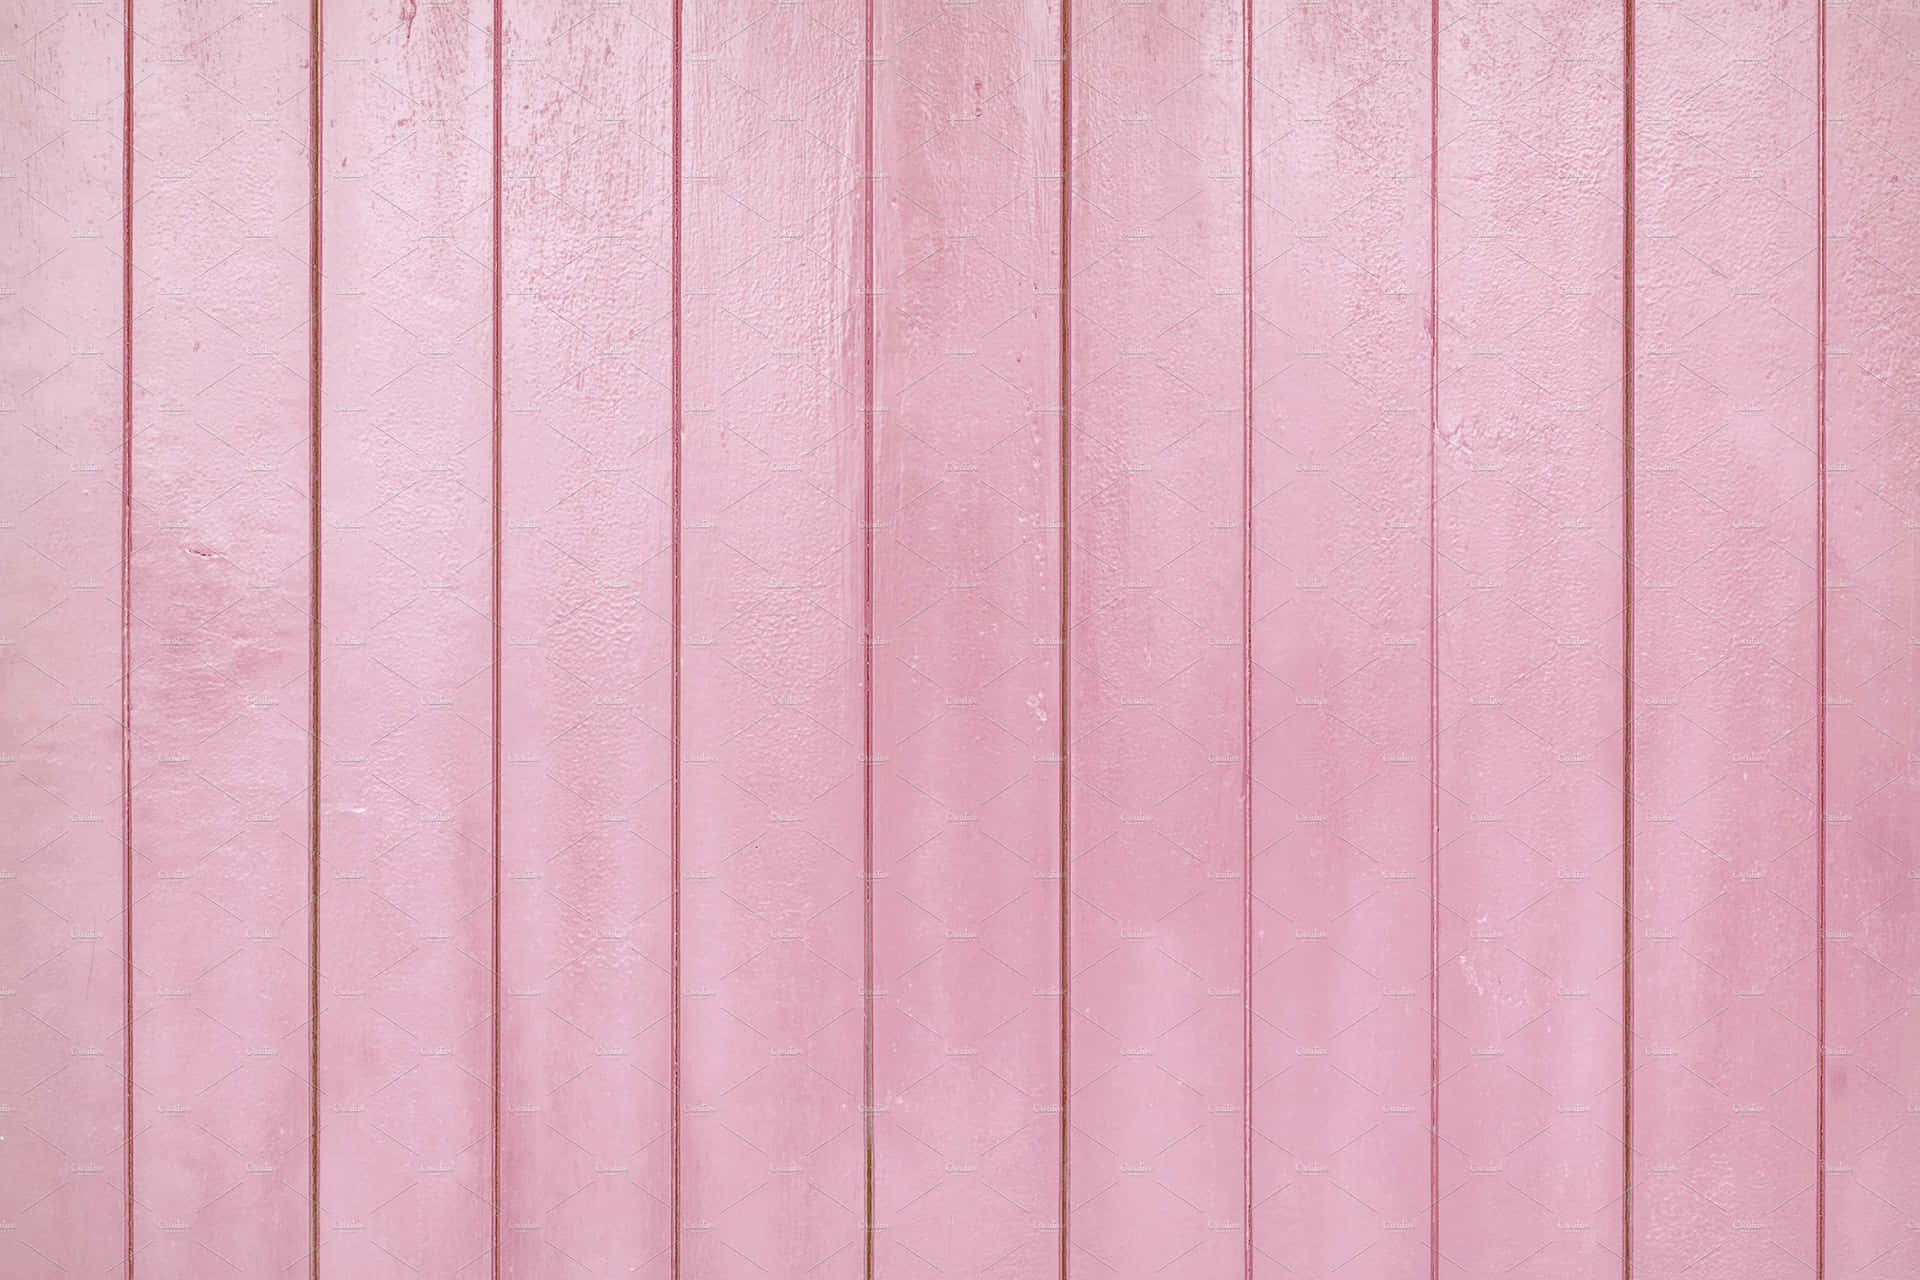 Pink Texture 3600 X 2400 Wallpaper Wallpaper